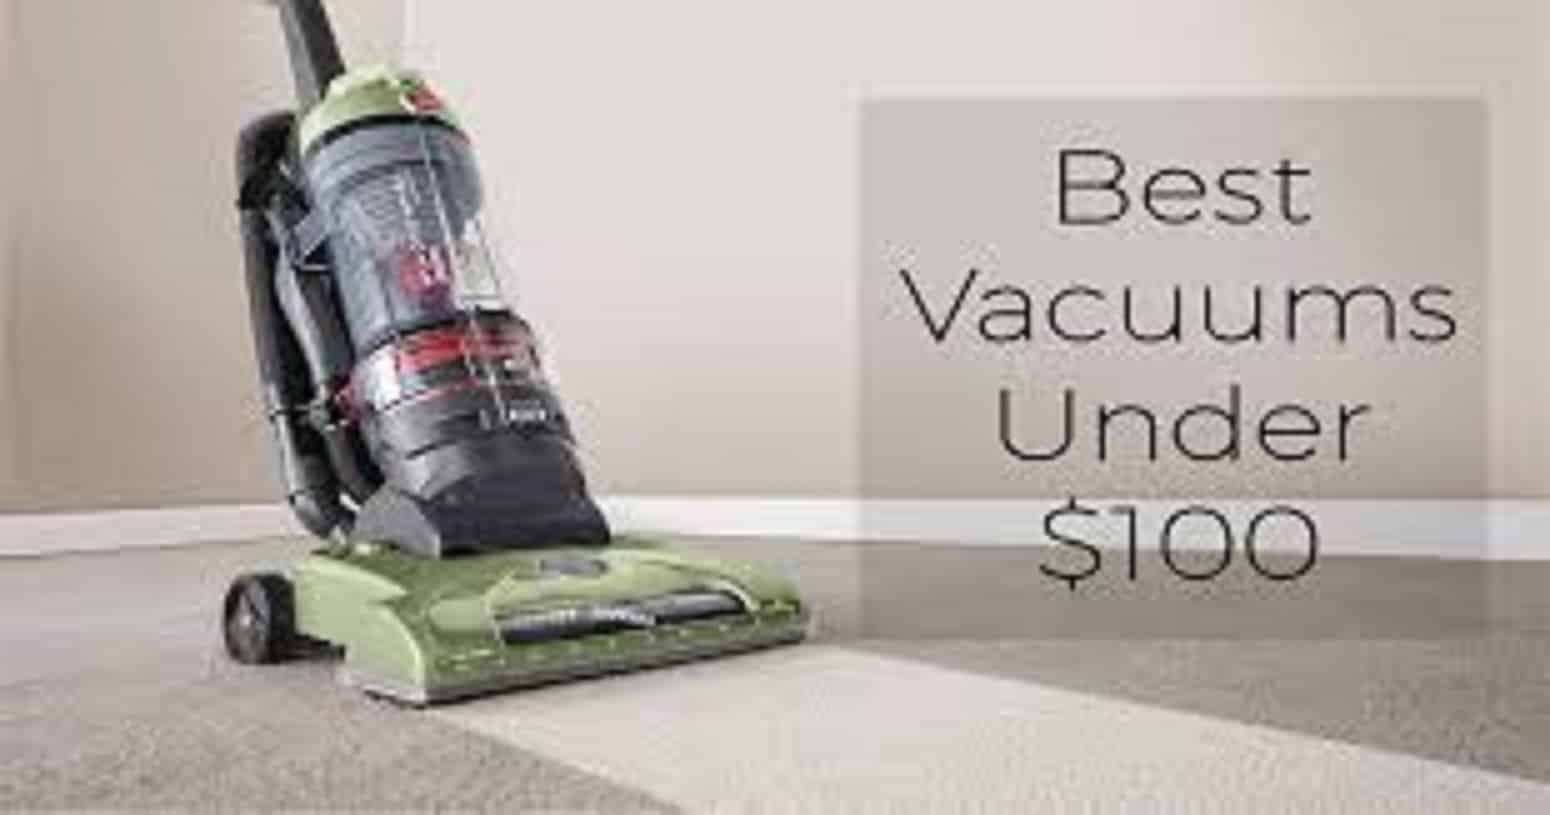 Best Vacuum Under $100